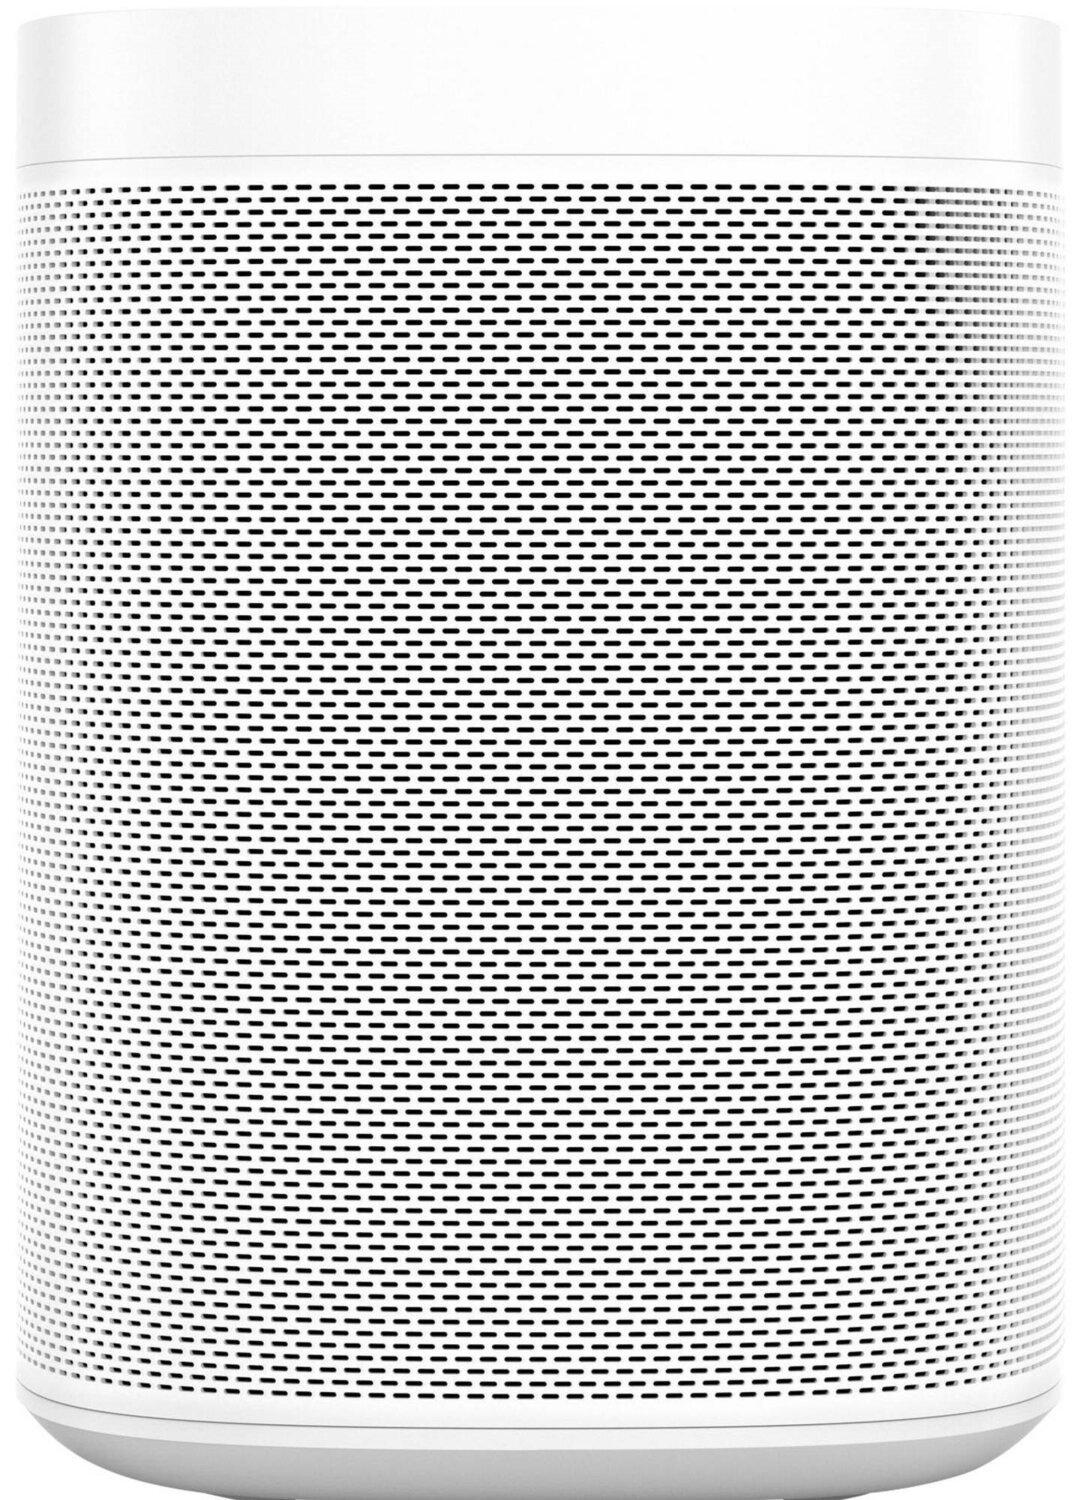 Беспроводная аудиосистема Sonos One SL White, ONESLEU1